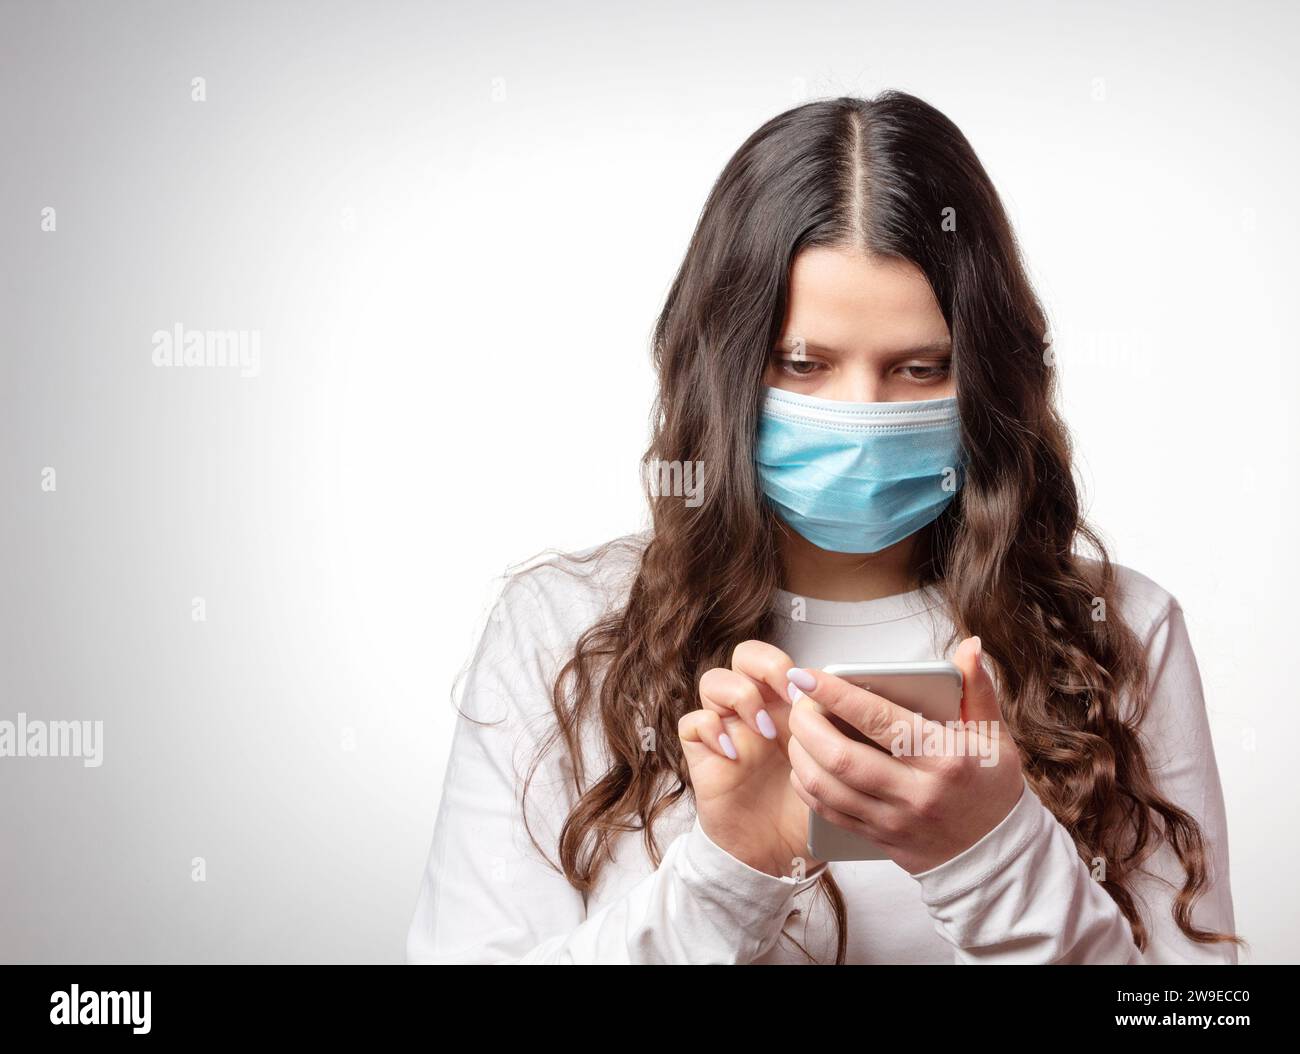 COVID-19. Una ragazza con una maschera protettiva sta scrivendo un messaggio in uno smartphone. Pandemia di coronavirus. Epidemia di nCoV. Foto Stock